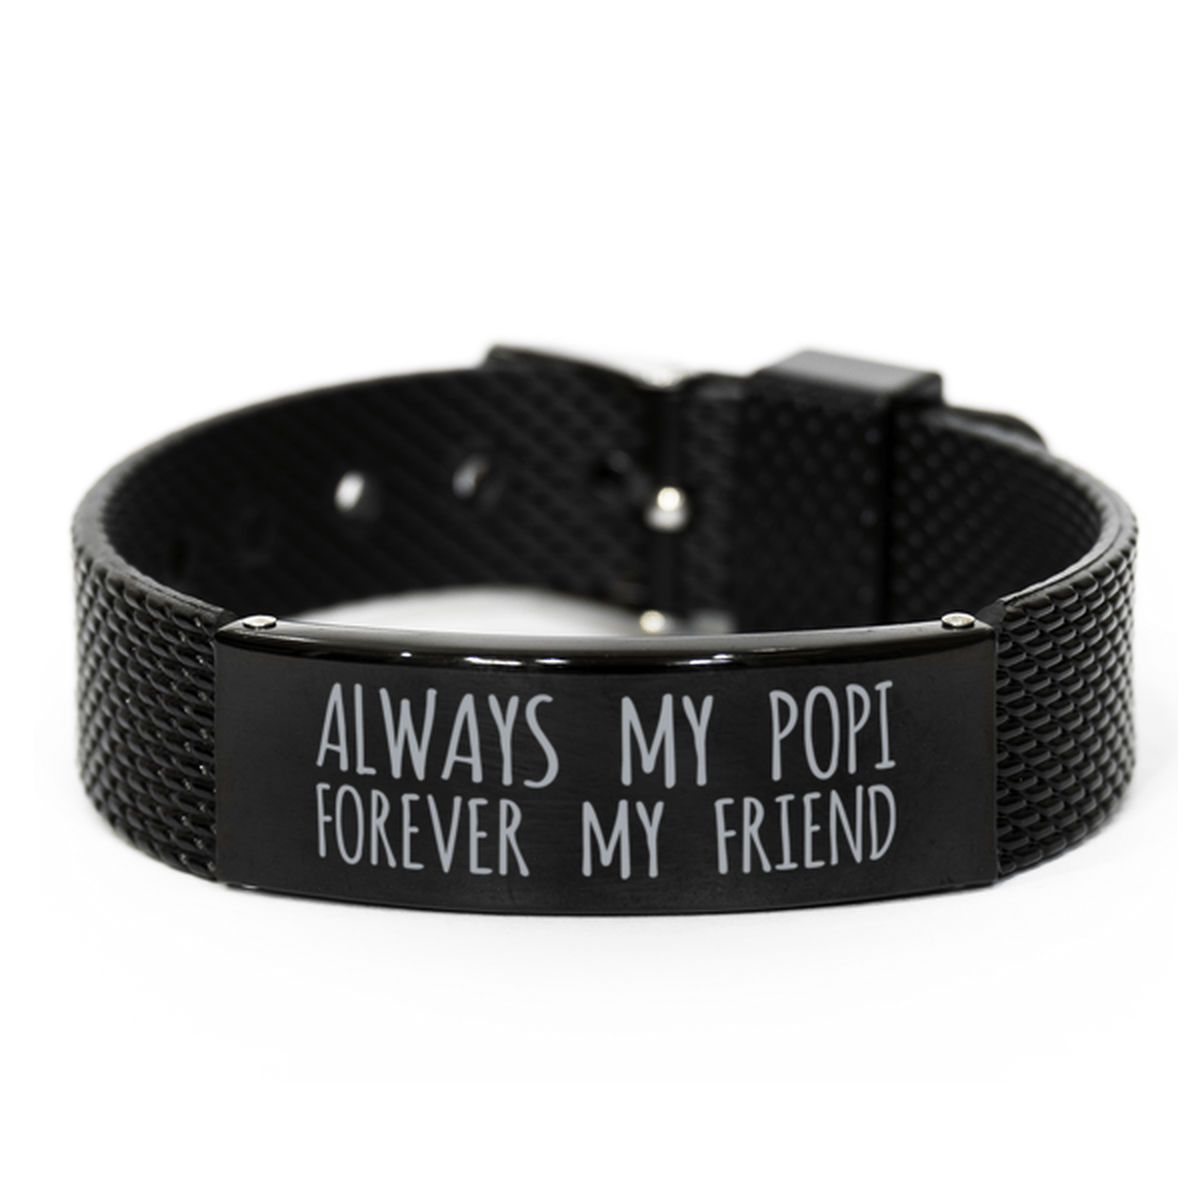 Inspirational Popi Black Shark Mesh Bracelet, Always My Popi Forever My Friend, Best Birthday Gifts for Family Friends